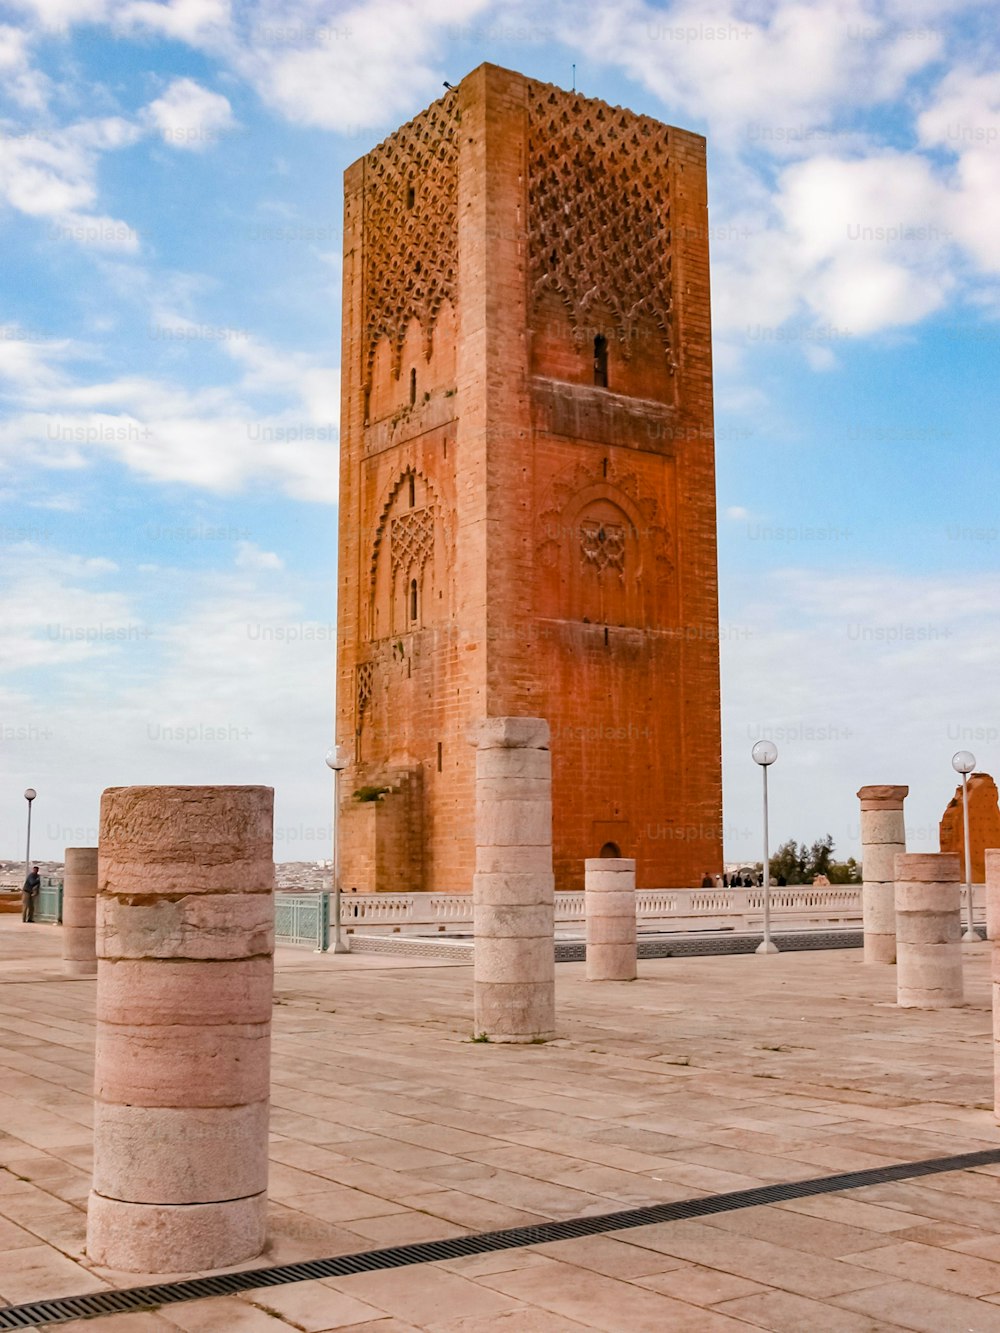 Uno scatto verticale del punto di riferimento storico della torre di Tour Hassan a Rabat, Marocco